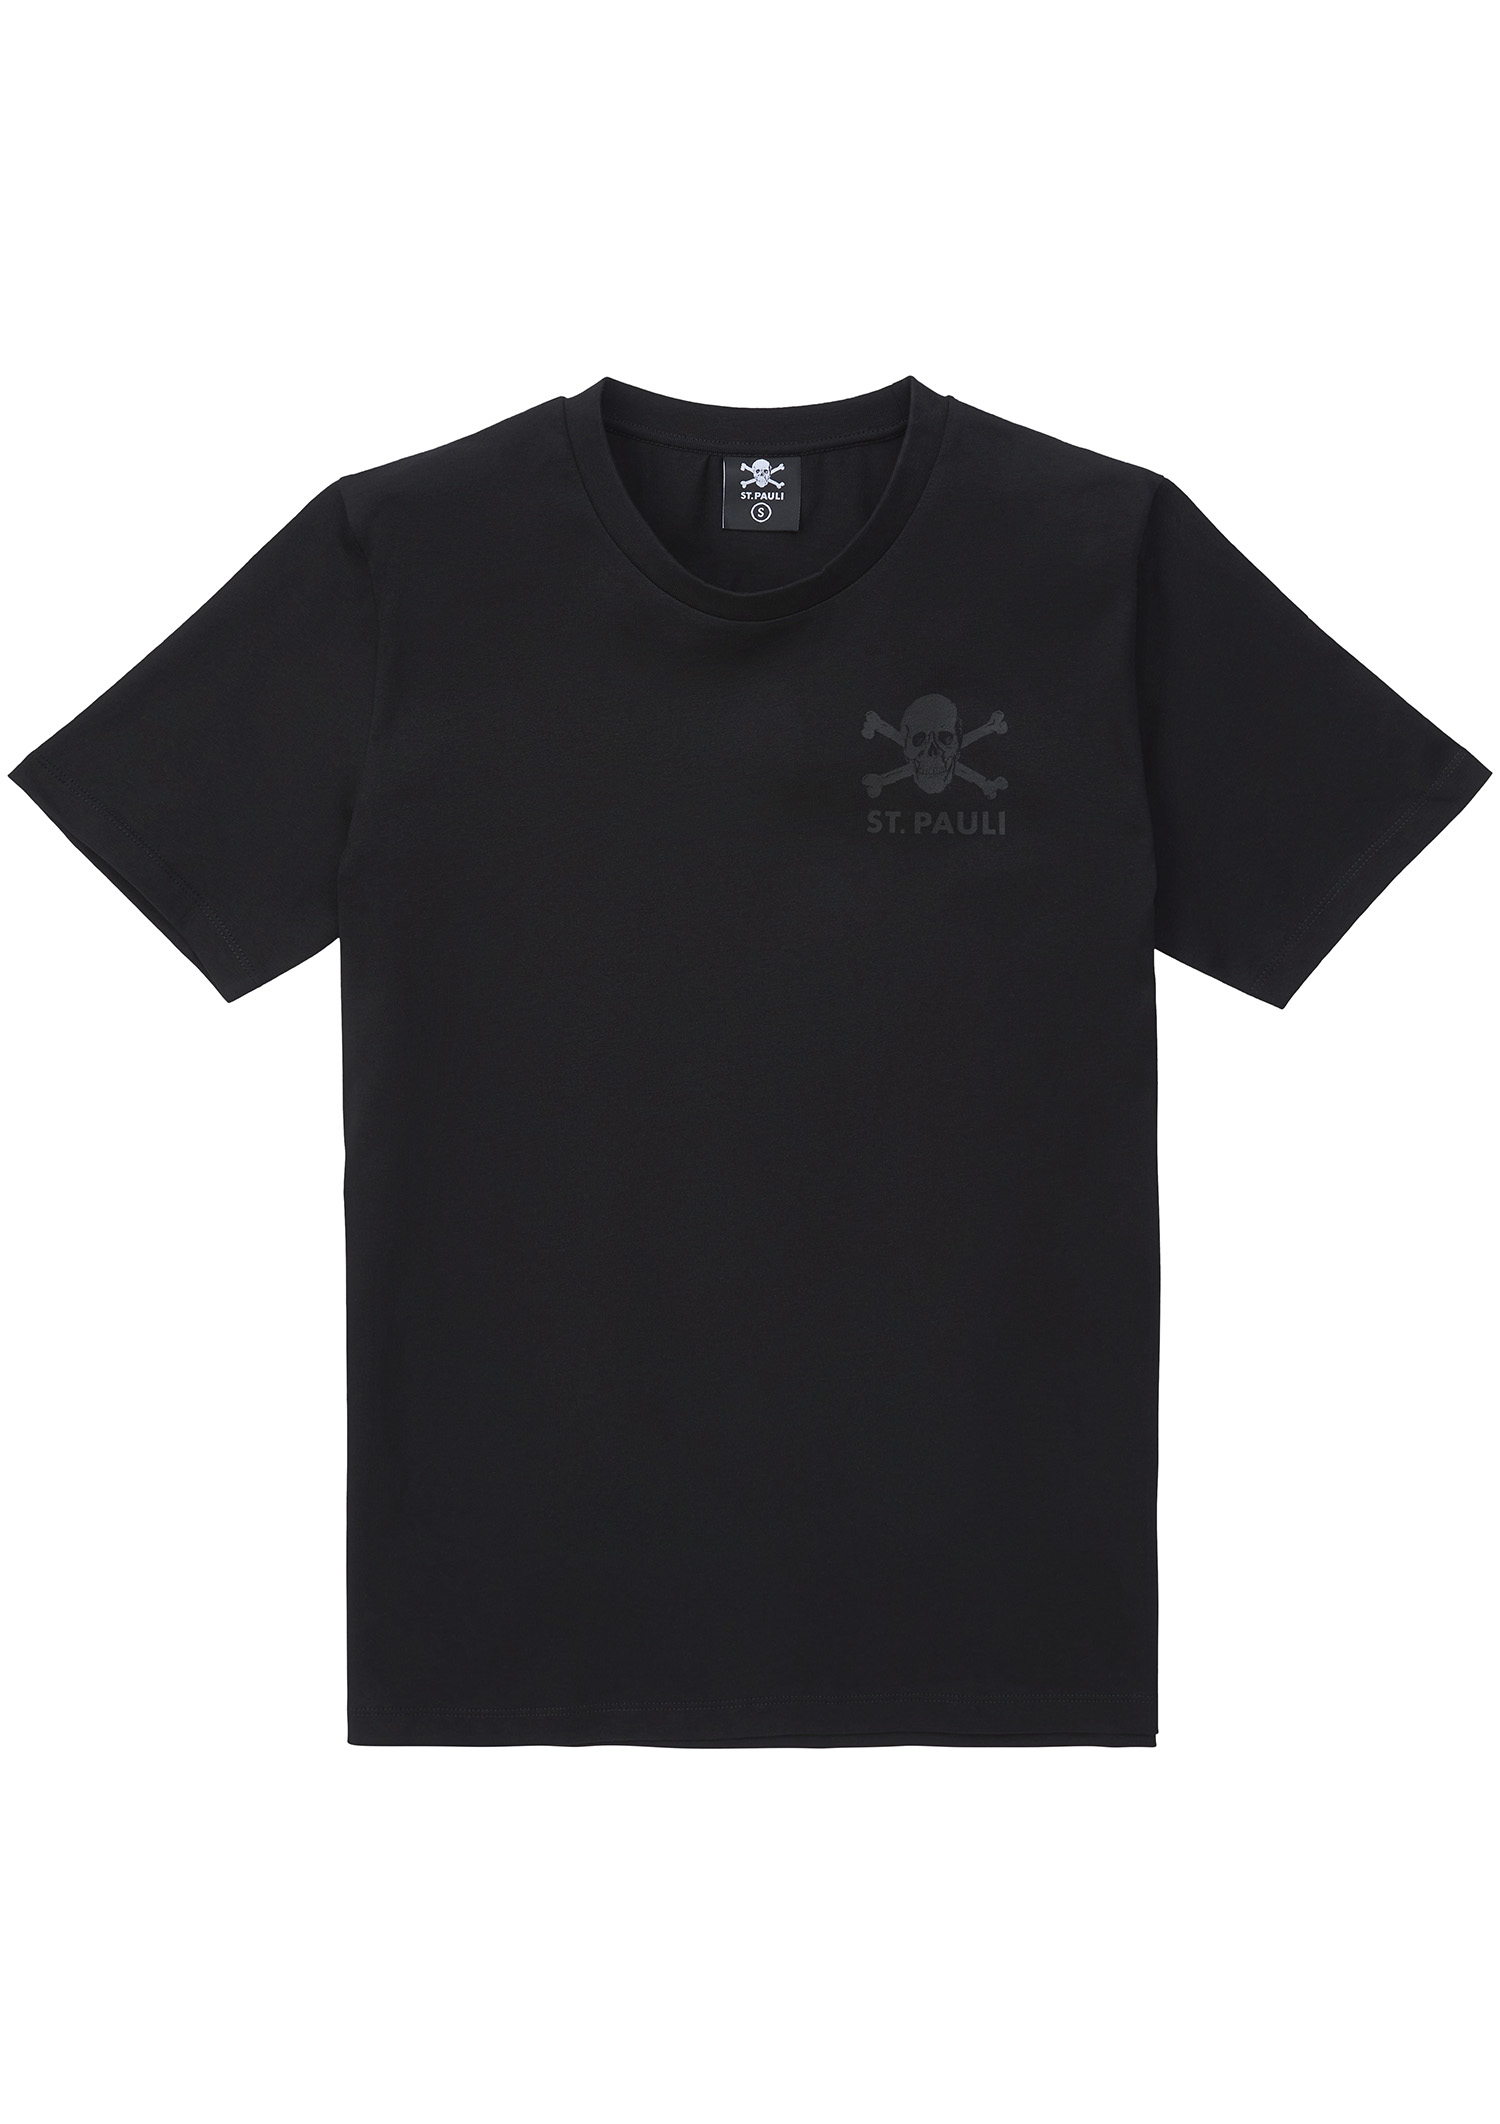 T-Shirt "All Black" Skull and Crossbones 